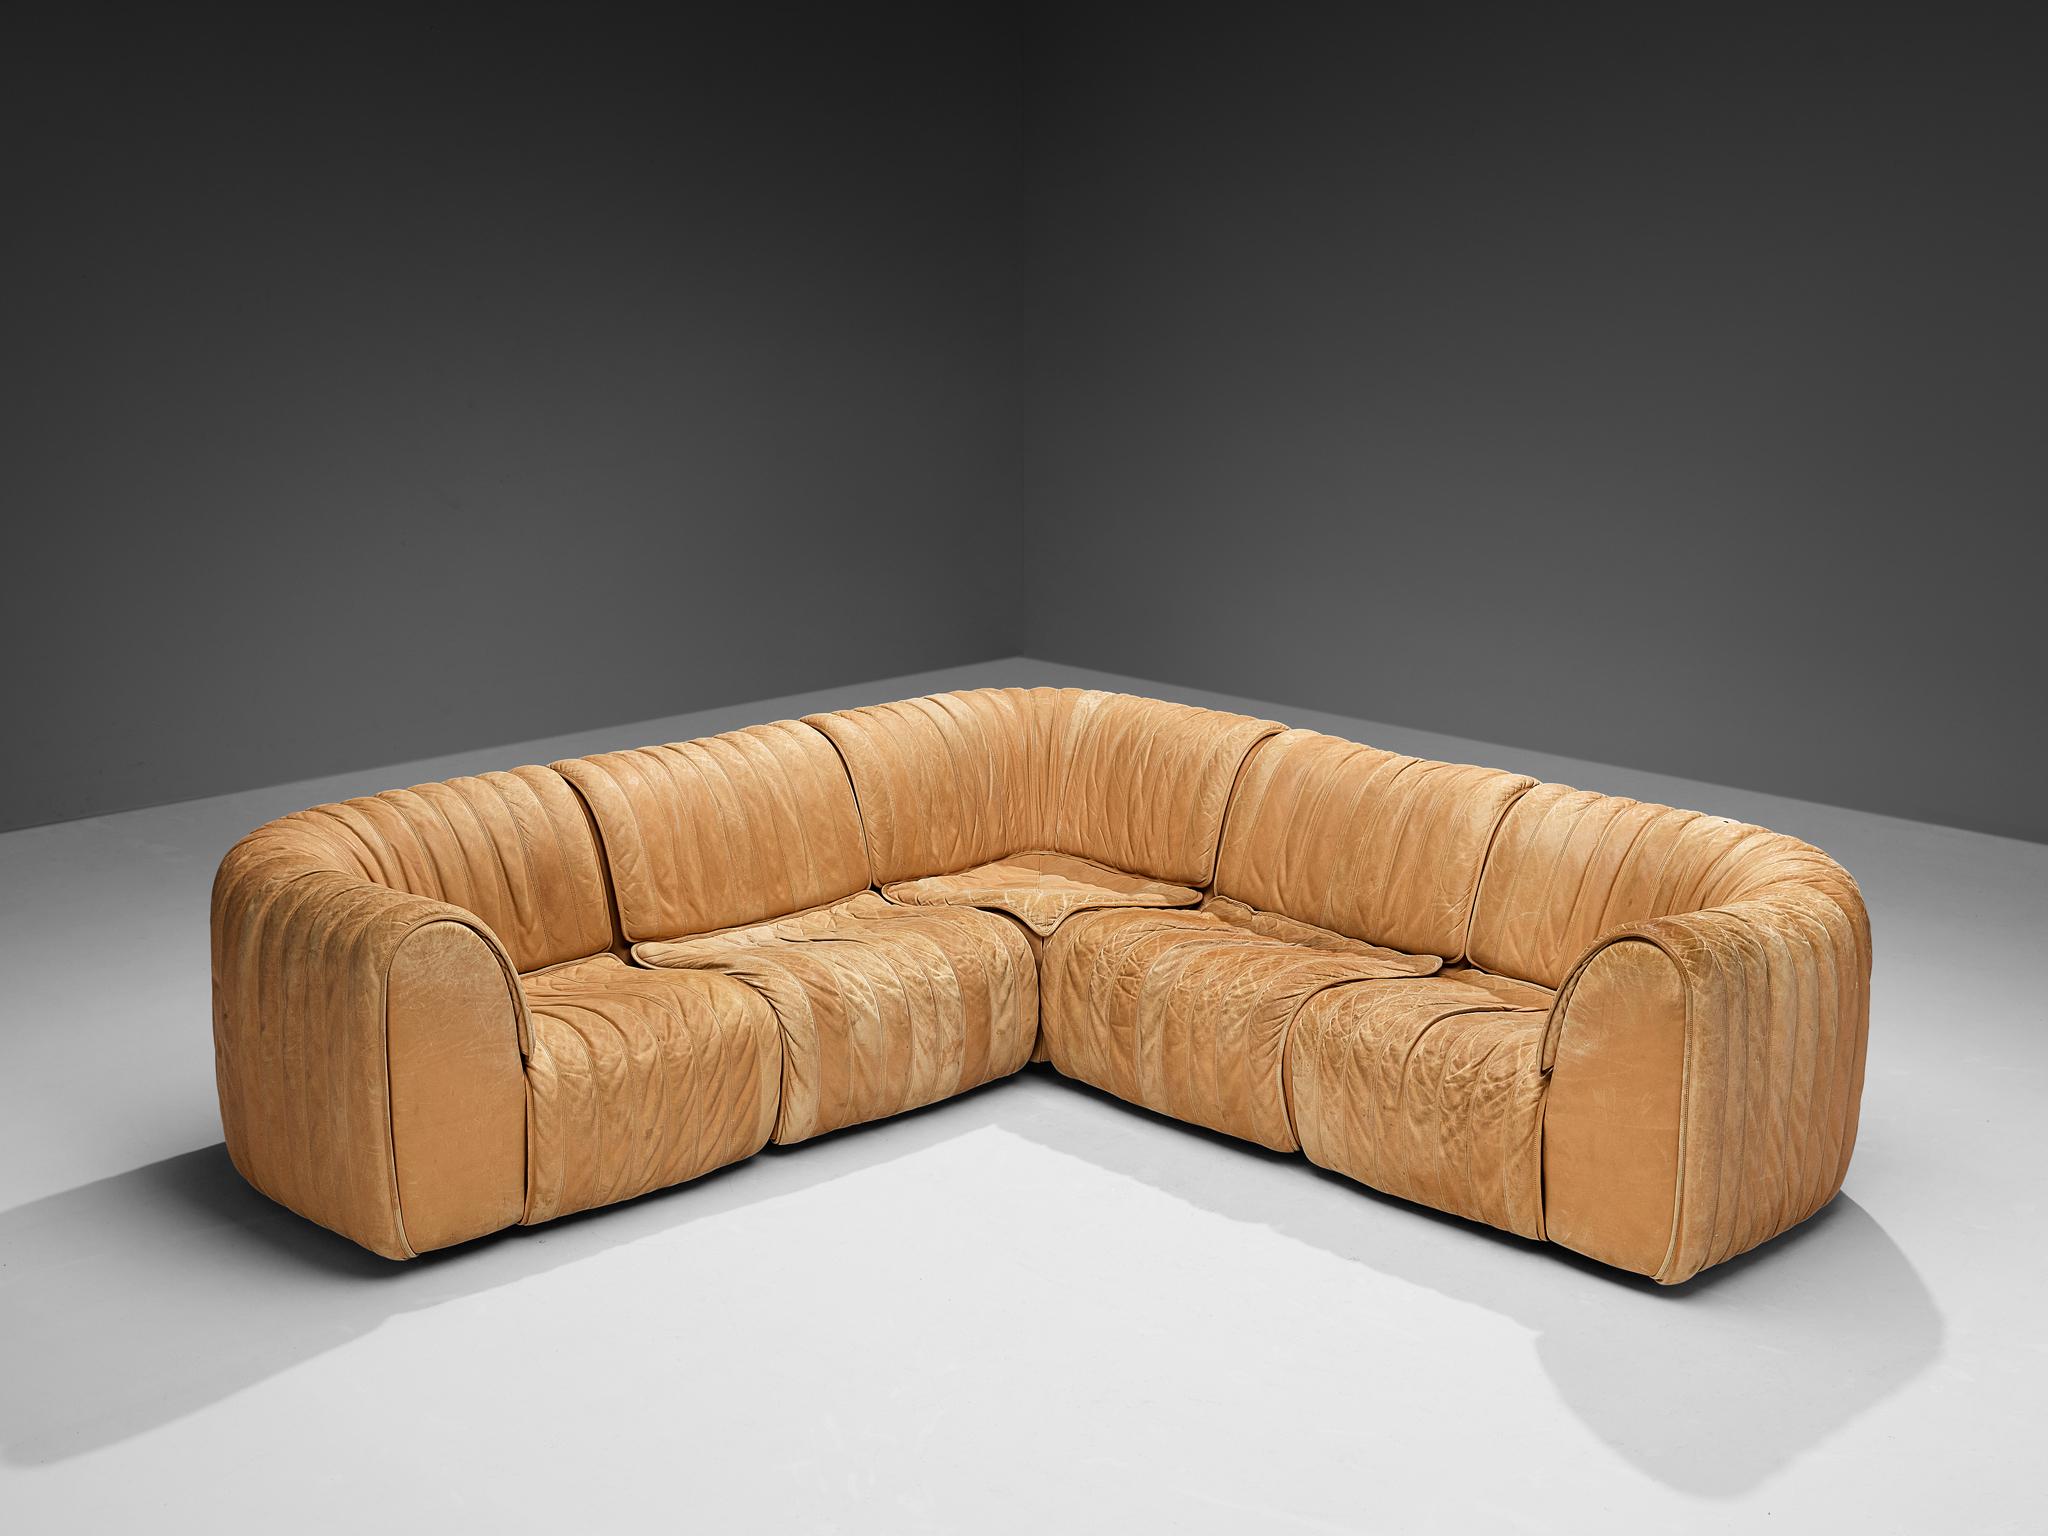 De Sede, 'DS-22' Modulares Sofa, Leder, Schweiz, 1980er Jahre 

Dieses hochwertige, von De Sede in den 1980er Jahren entworfene Sektionssofa besteht aus drei Eck- und drei regulären Elementen. Dadurch wird das Sofa sehr vielseitig, da es